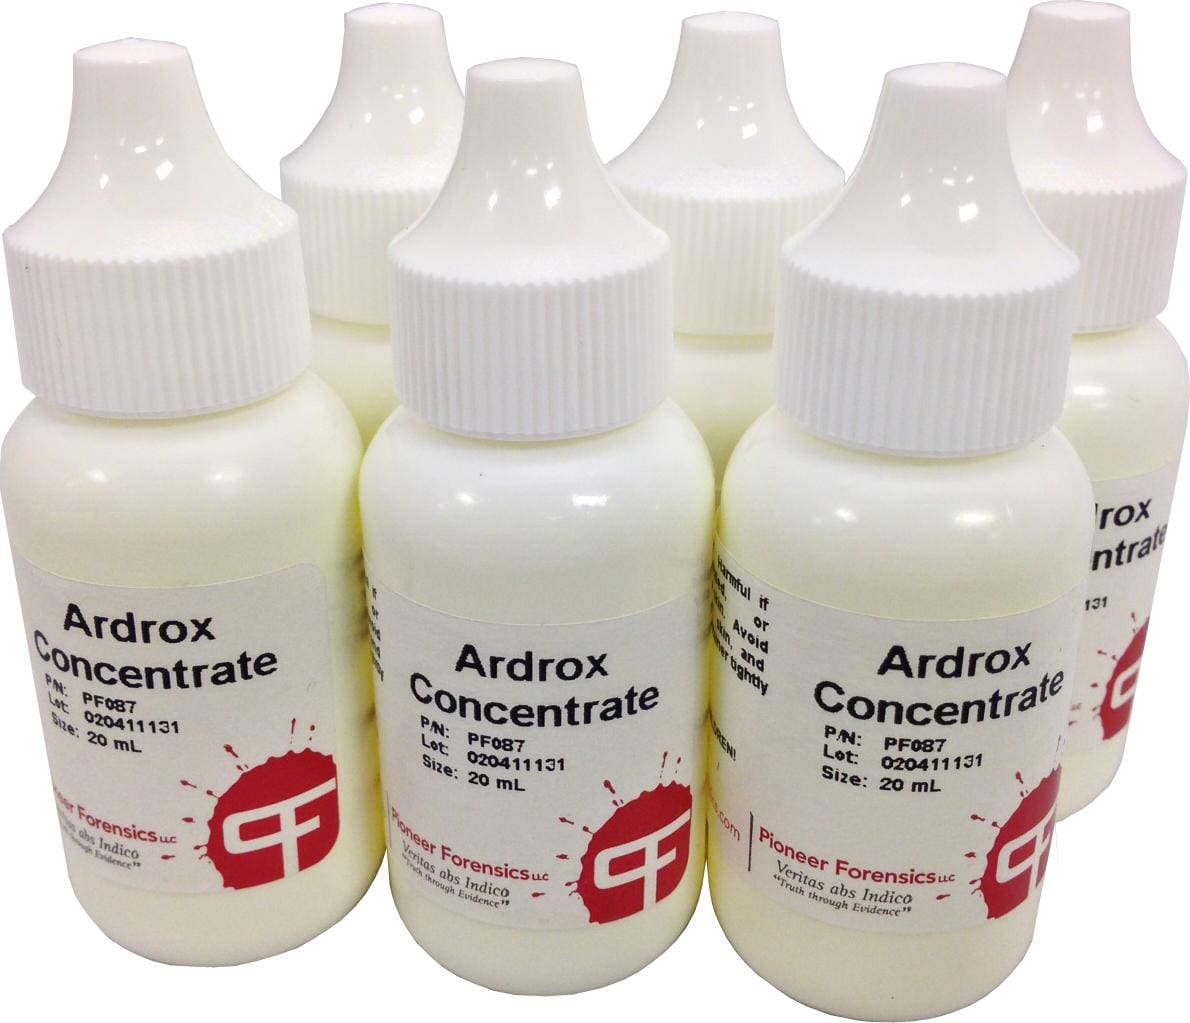 Ardrox is a fluorescent liquid dye, which works